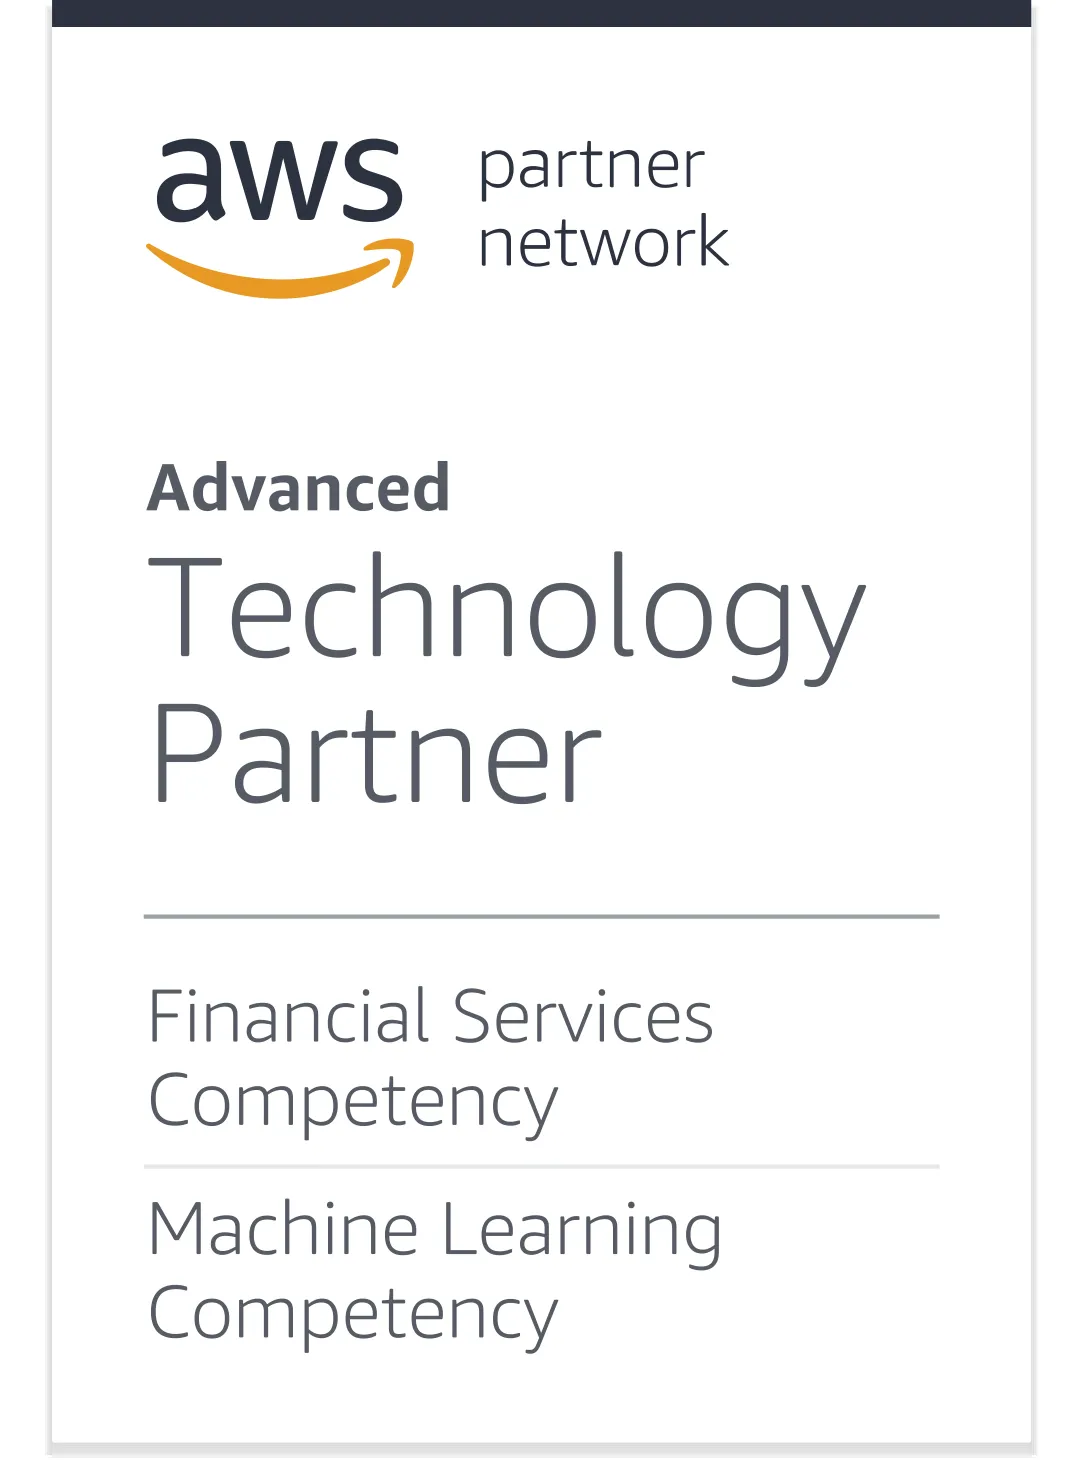 具有金融服务能力和机器学习能力的先进技术合作伙伴